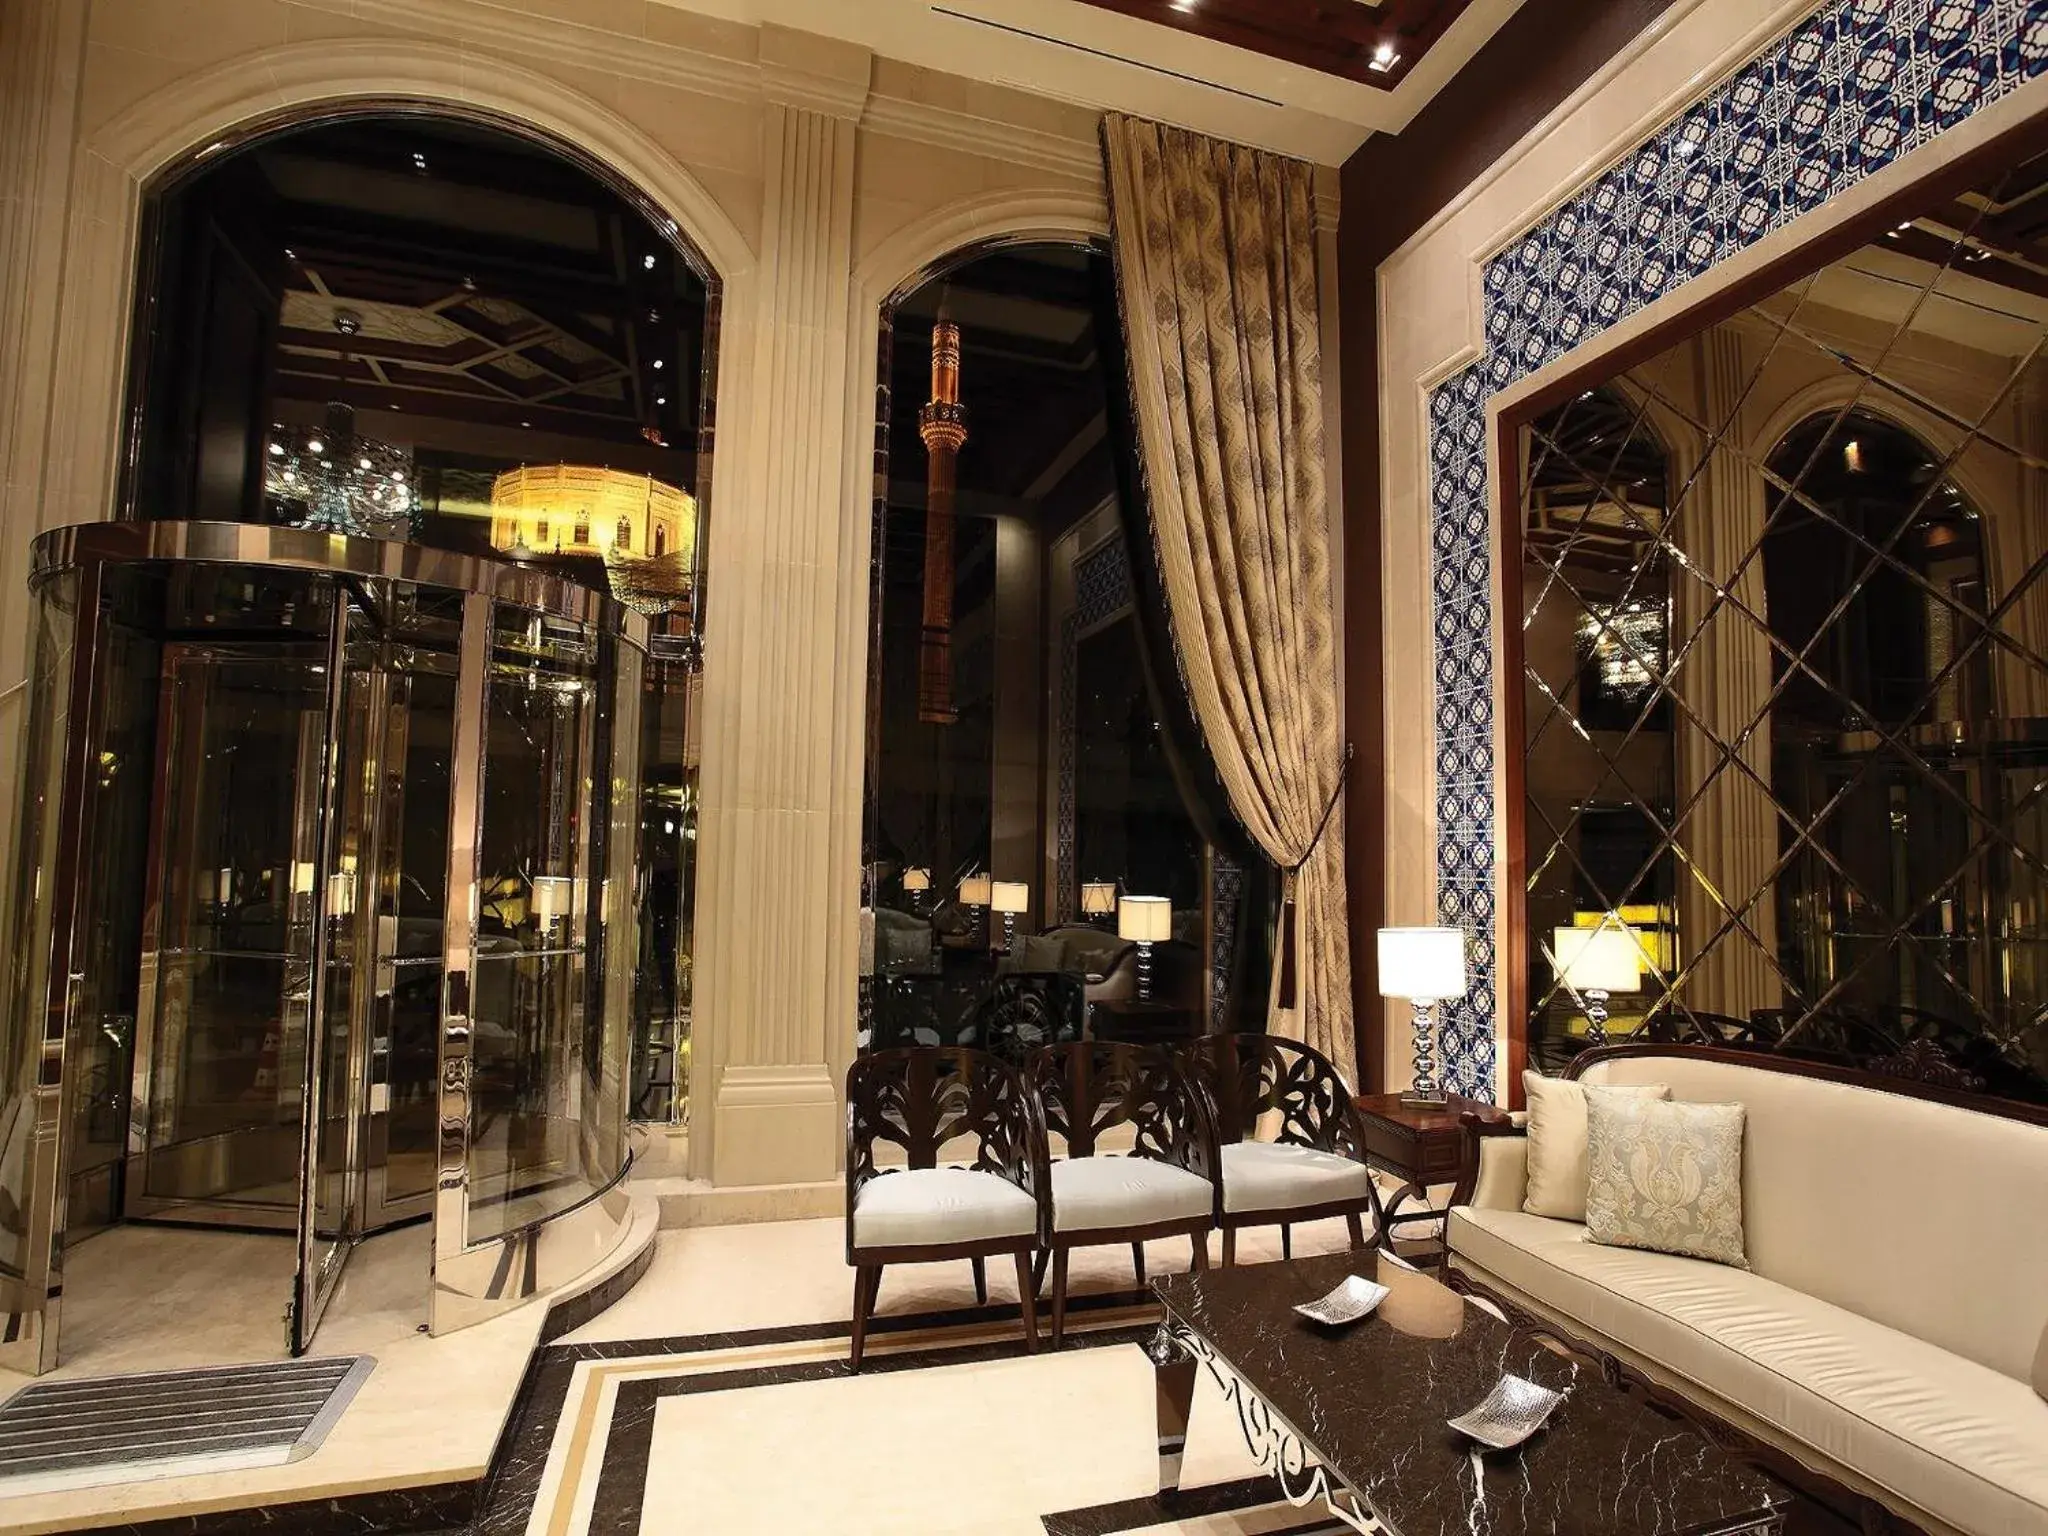 Lobby or reception in Grand Durmaz Hotel